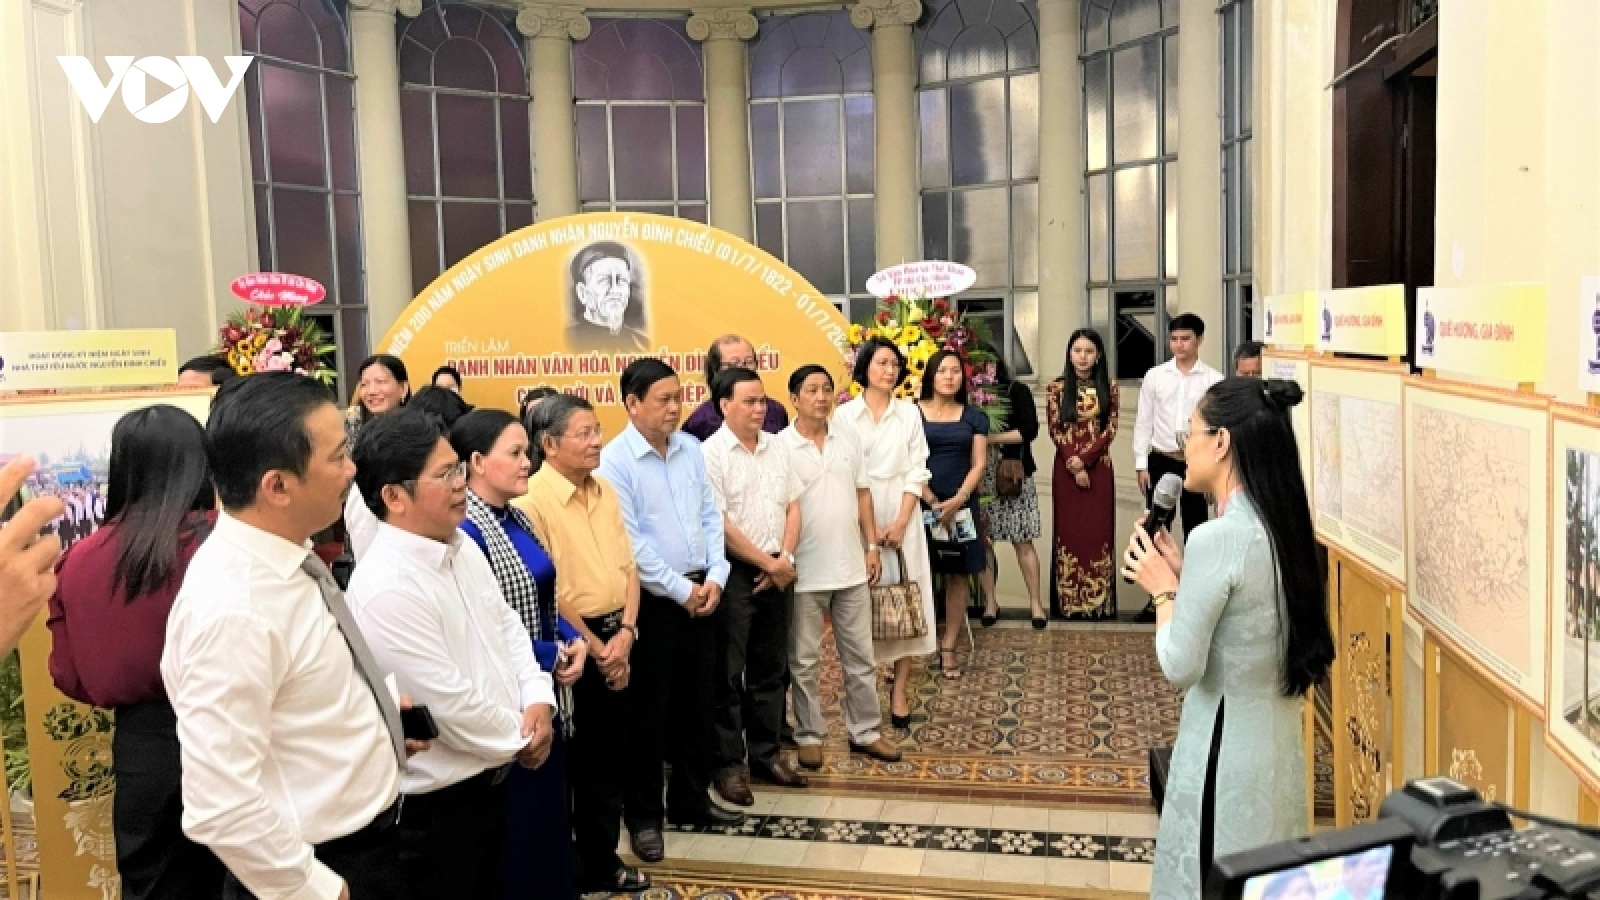 Khai mạc triển lãm về Danh nhân văn hóa Nguyễn Đình Chiểu tại Bảo tàng TP.HCM